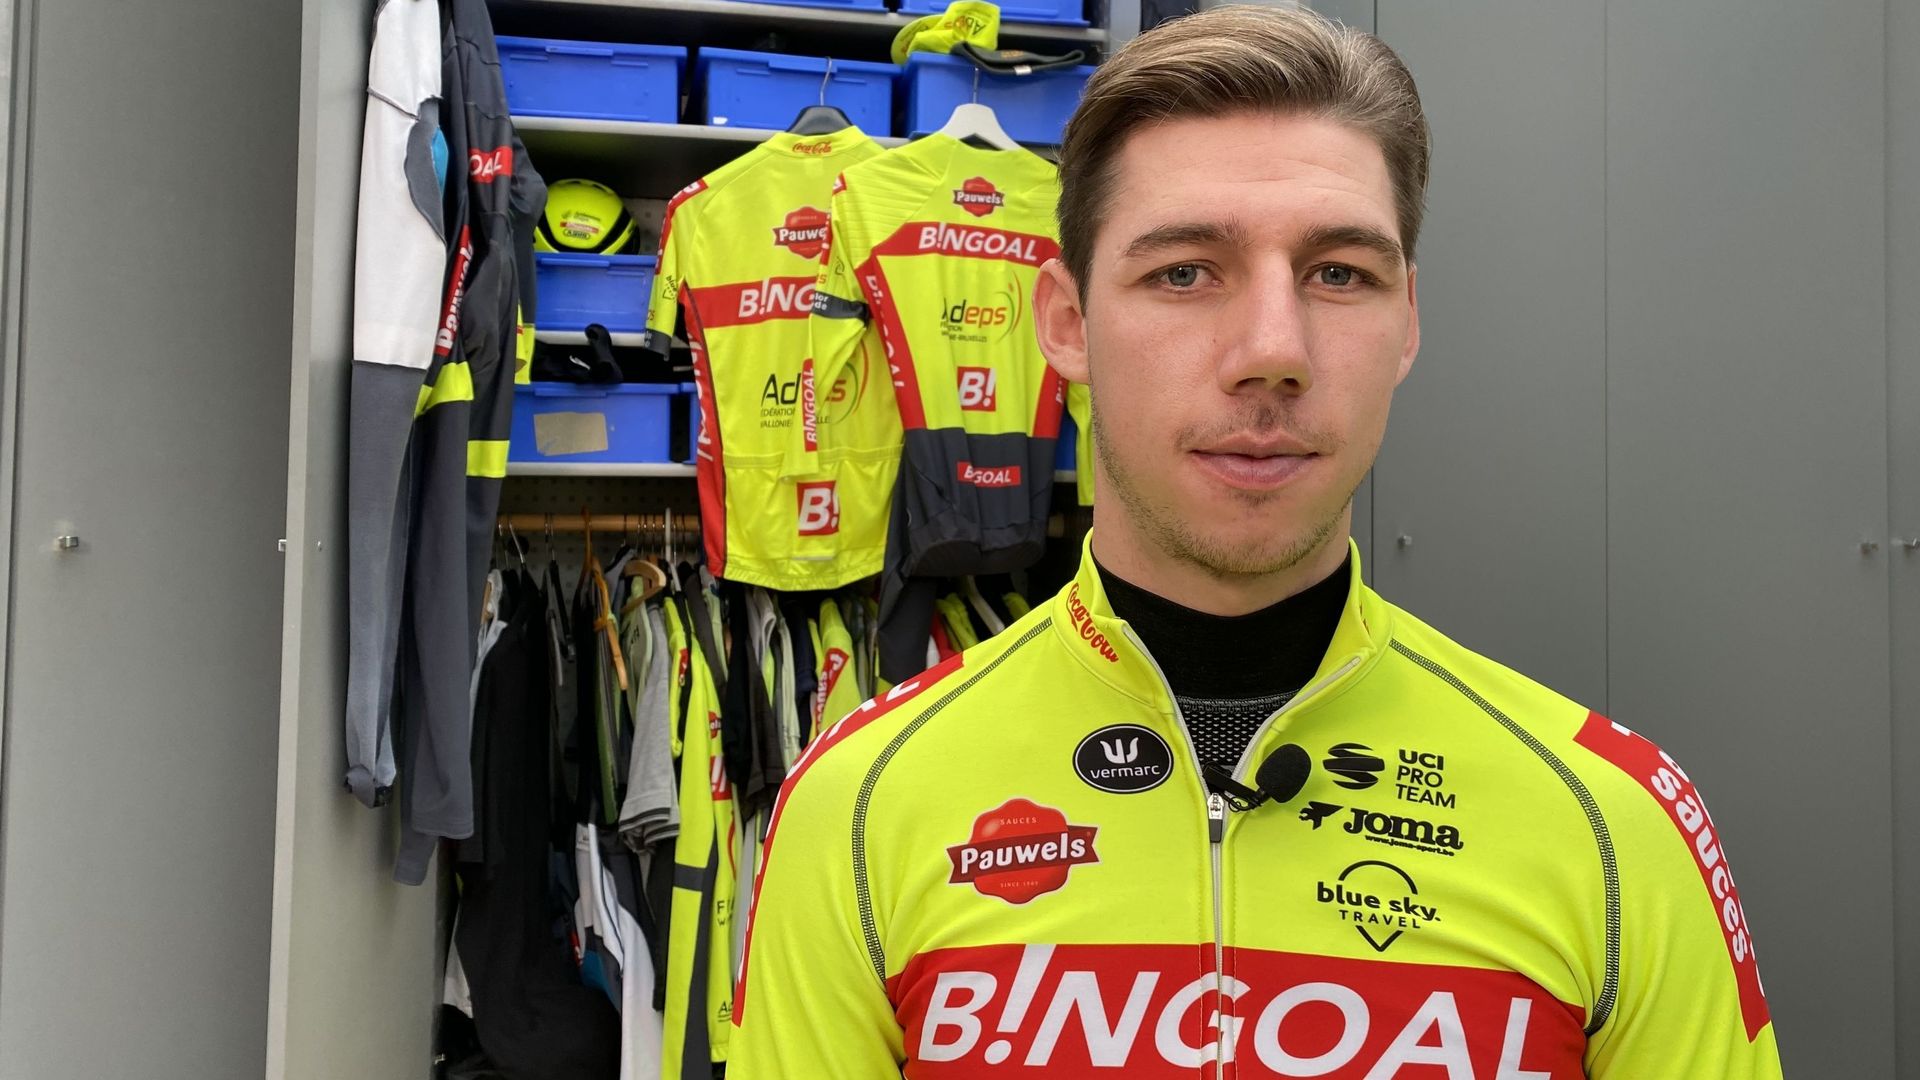 Ludovic Robeet, toujours fidèle au maillot de l'équipe Bingoal - Sauces Pauwels a déjà le regard tourné vers la saison 2022